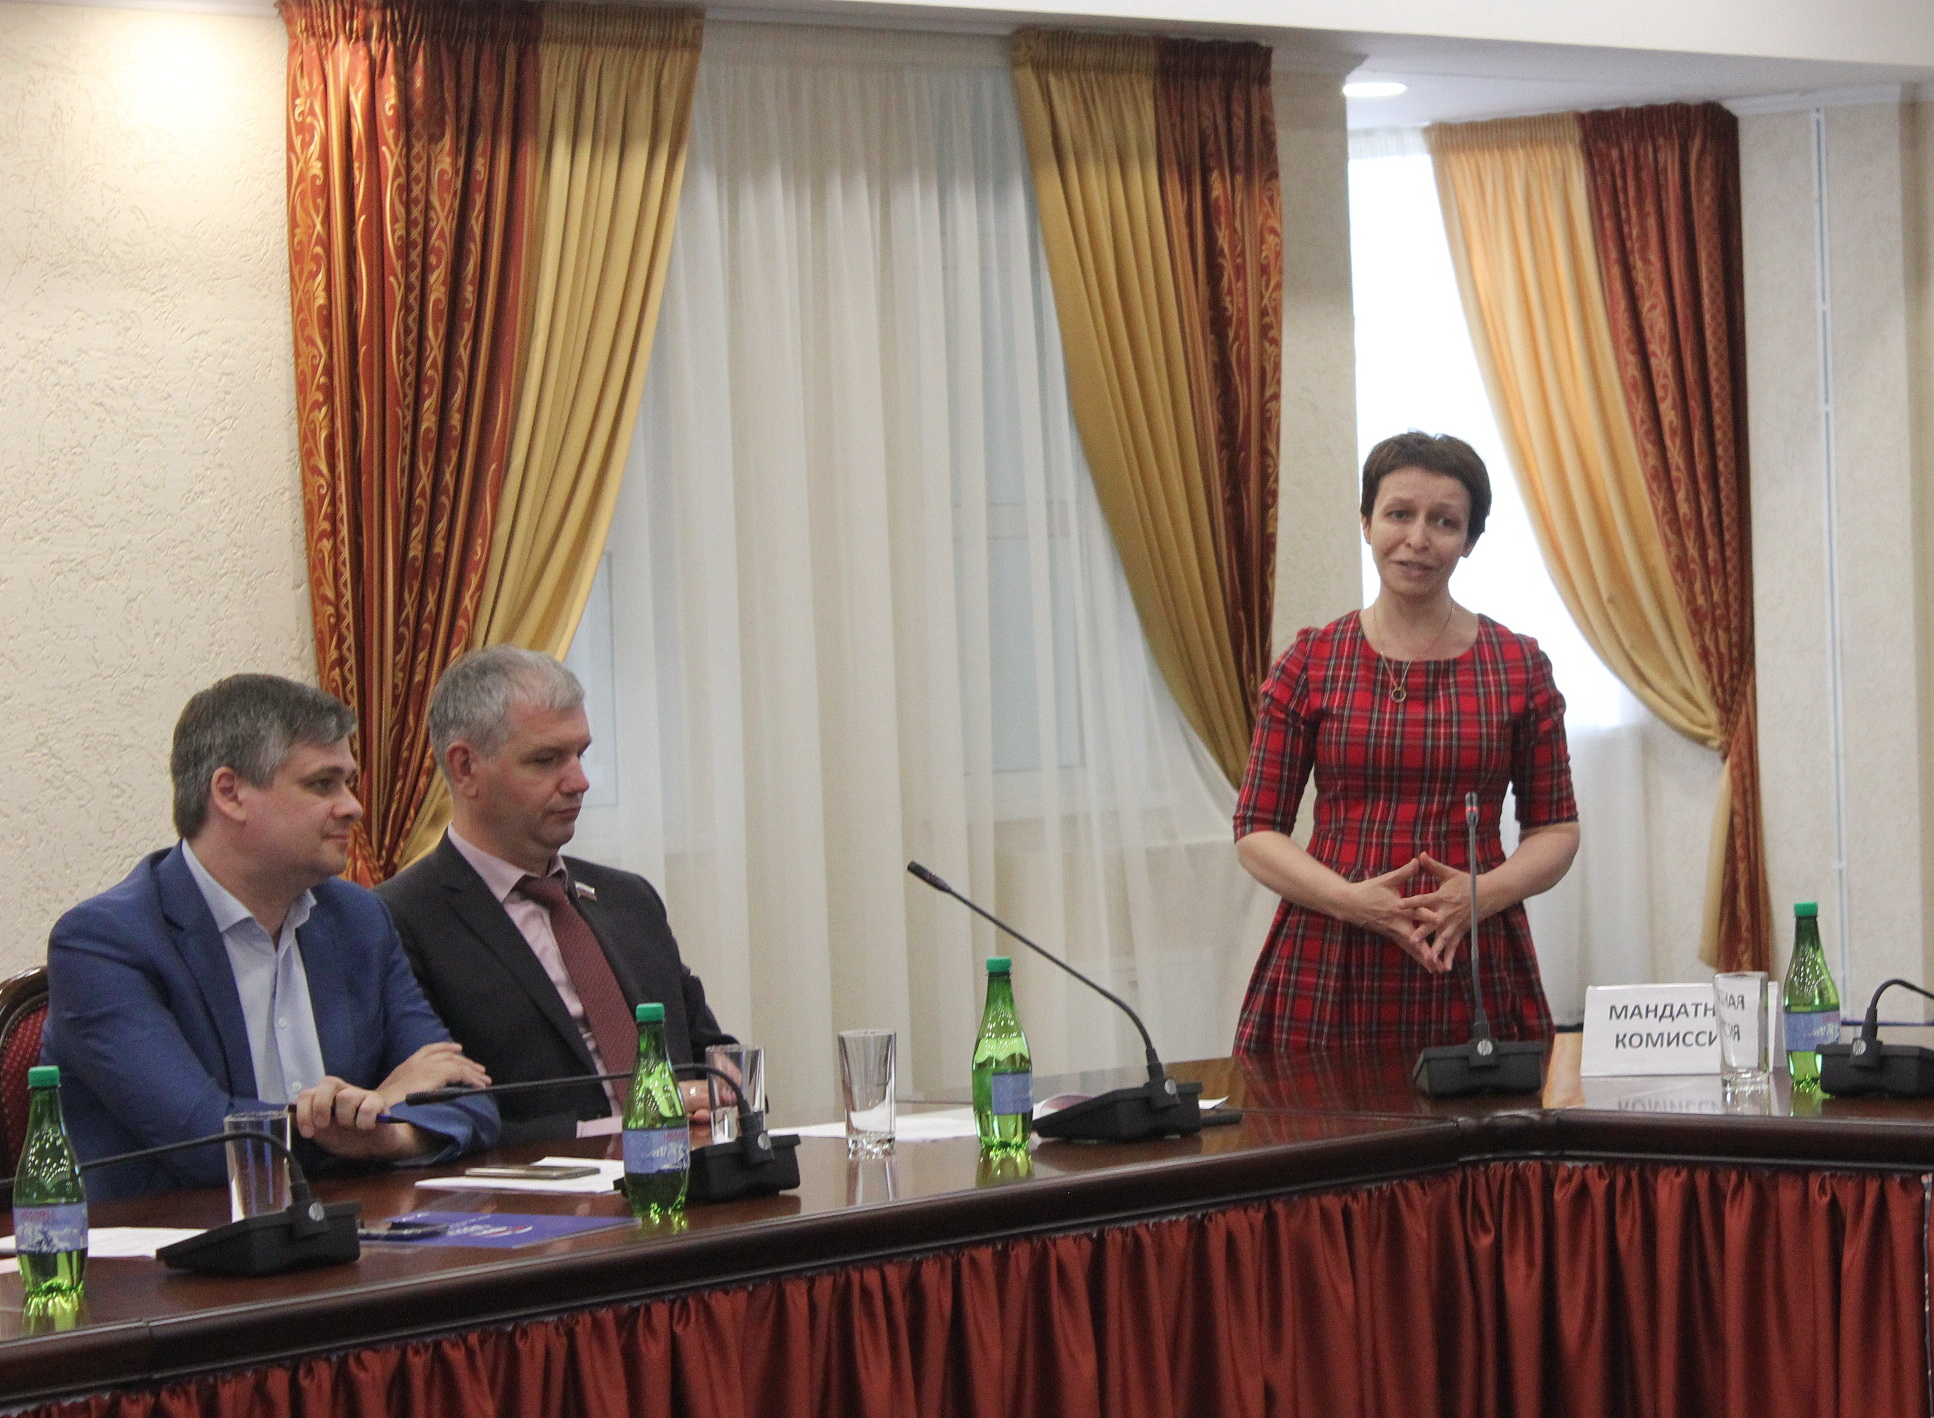 Выступает победитель предварительного голосования по городскому округу "Портовый" Елена Кислякова